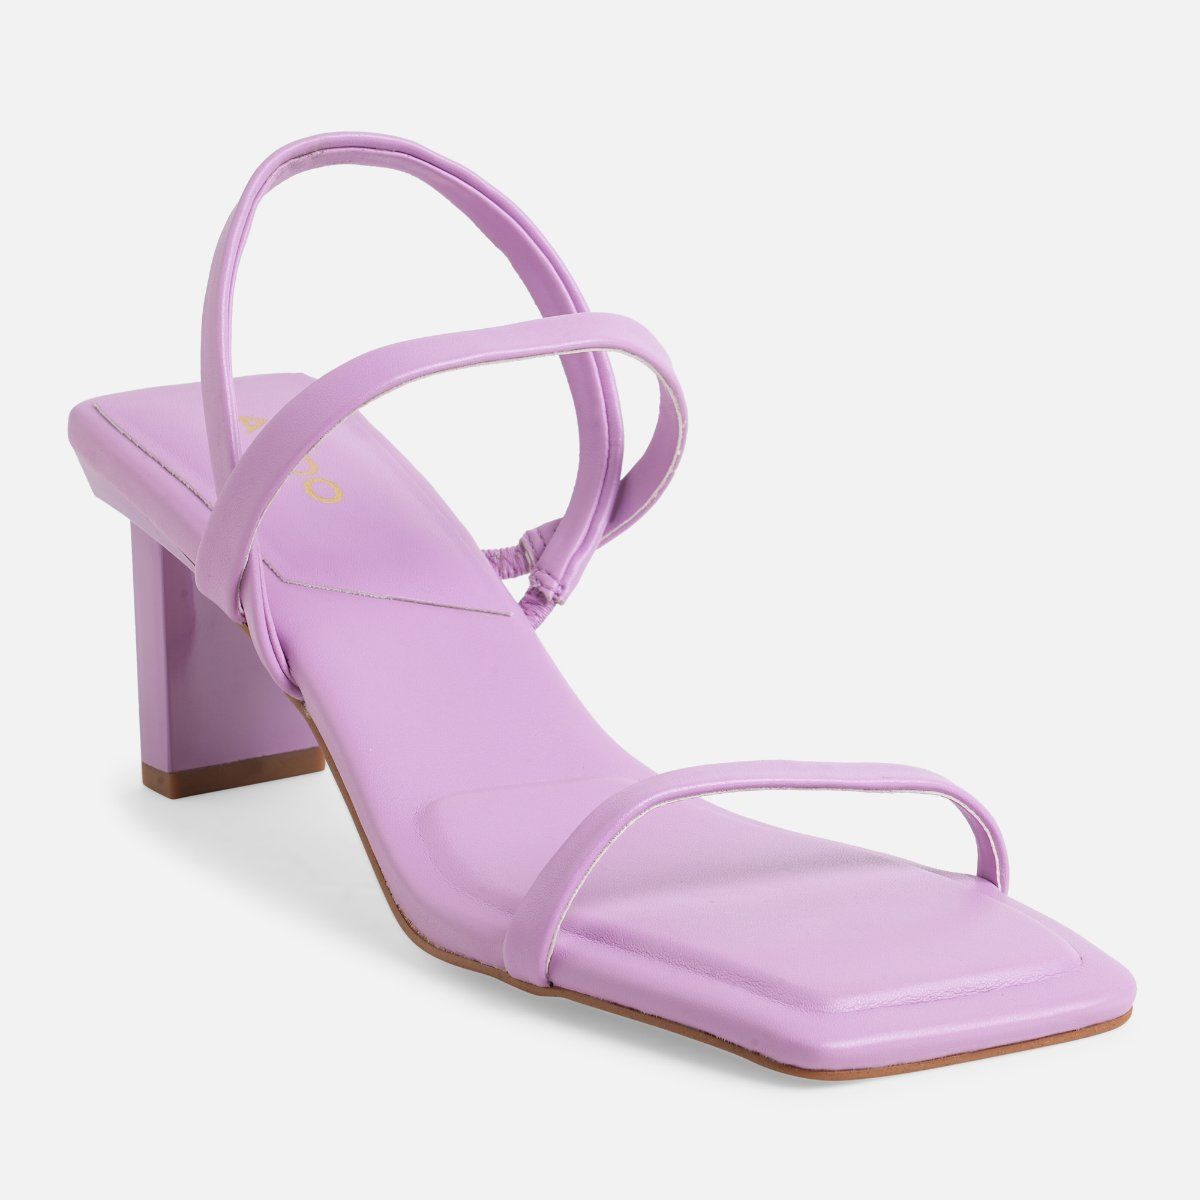 J. Renee Women Soncino Lace Strappy Open Toe Heel Sandal Shoe Size 8.0 WIDE  Navy | eBay